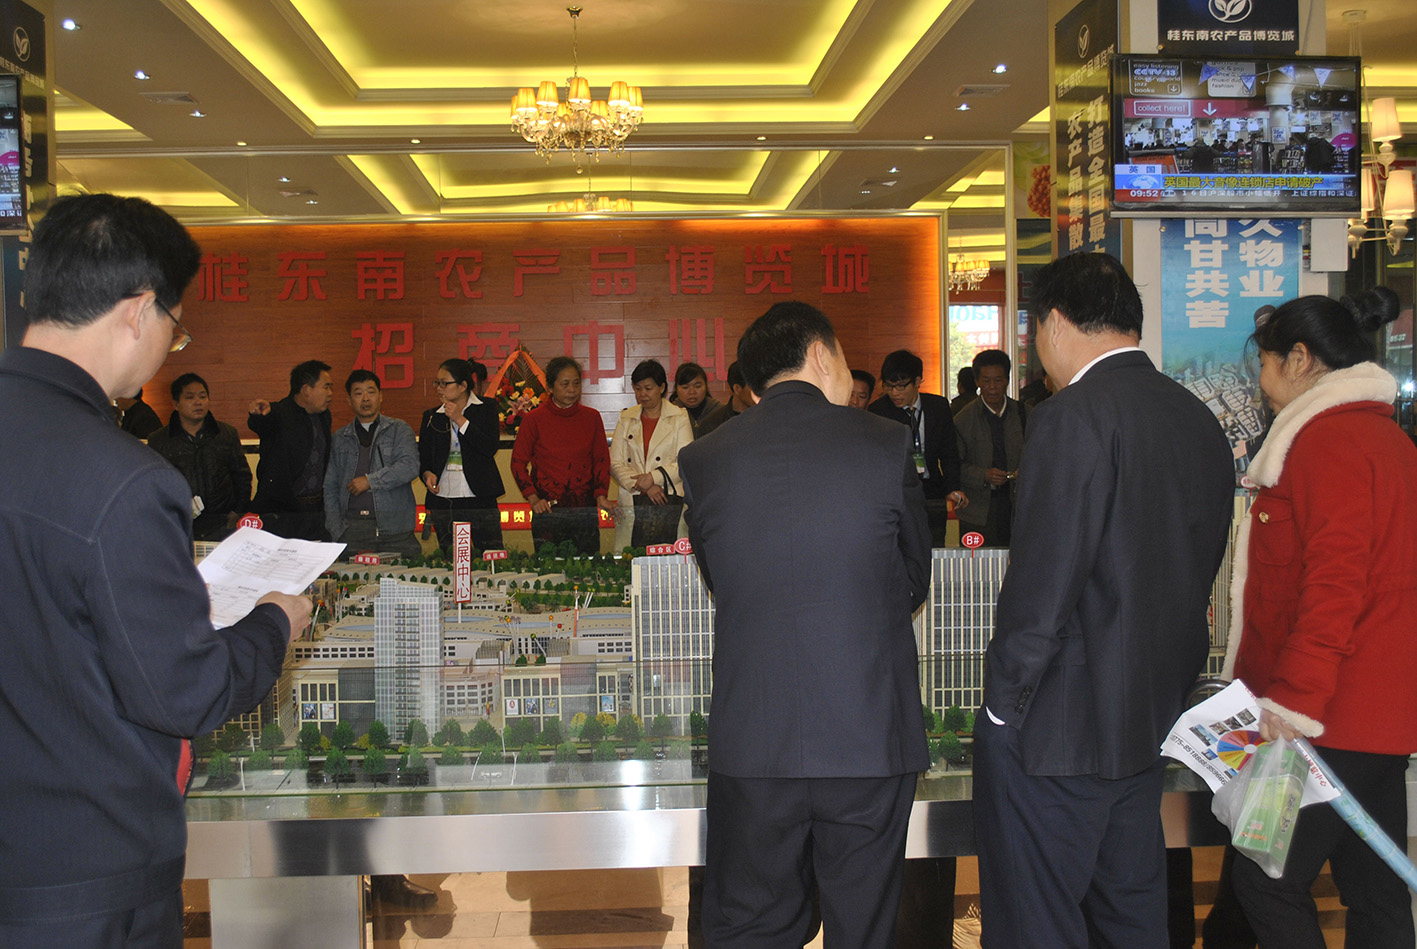 桂东南农产品博览城定于2013年1月16日举行桂东南农产品博览城相约1月16活动